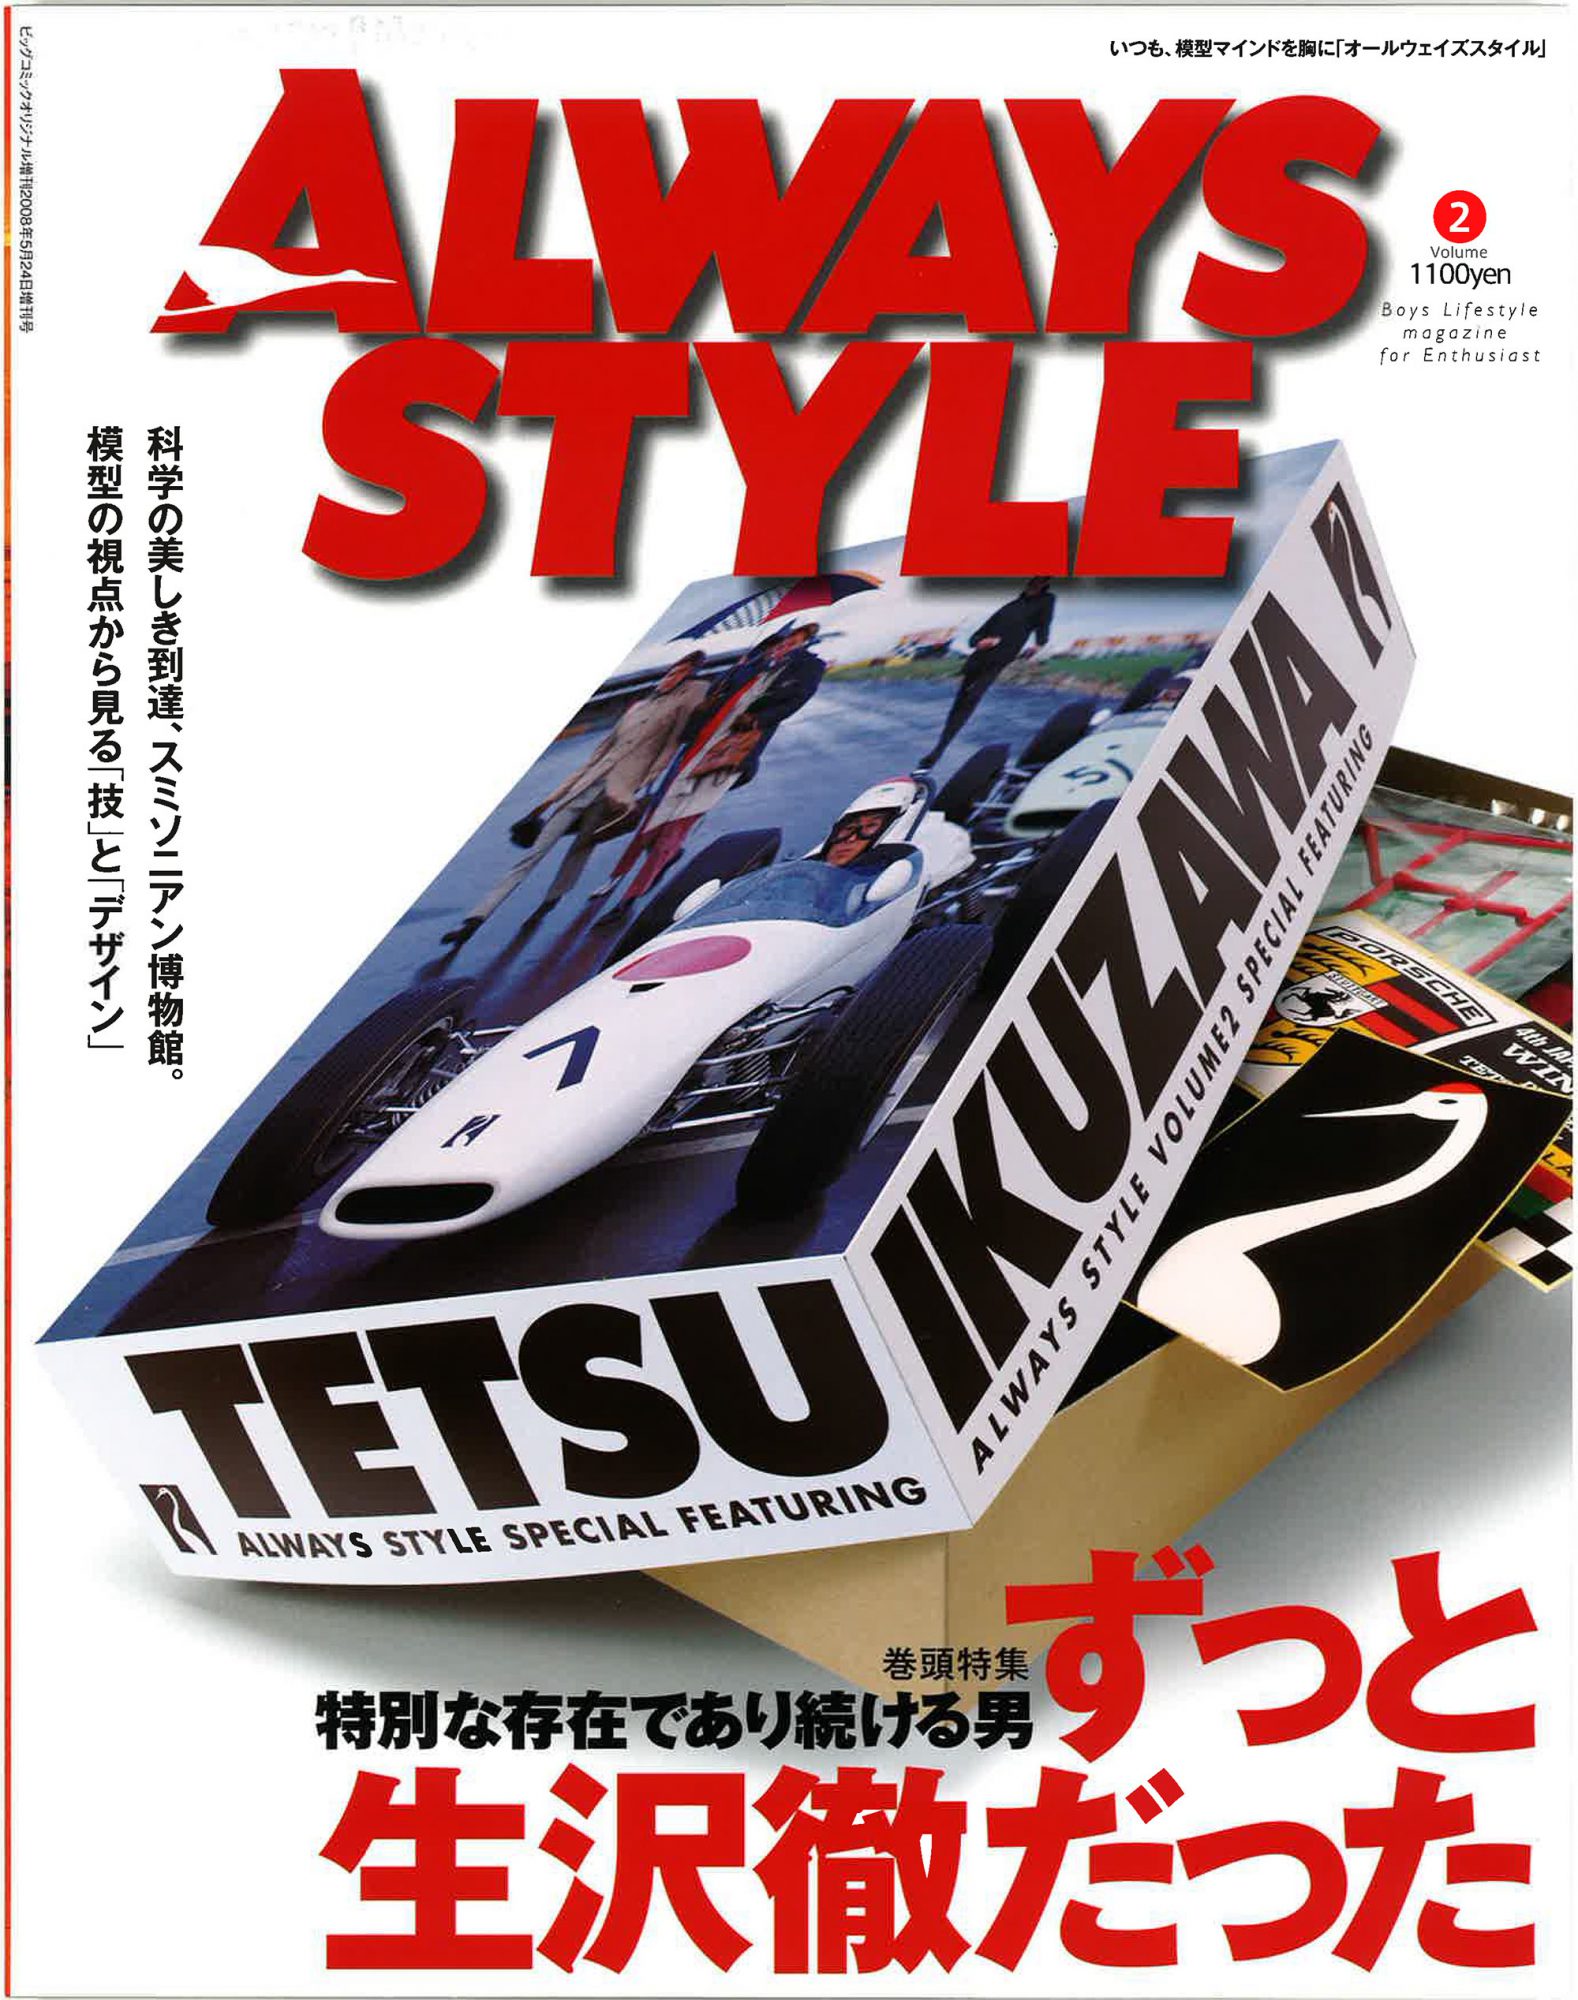 生沢 徹 オフィシャルブログ Tetsu Ikuzawa S Life Style Part 2